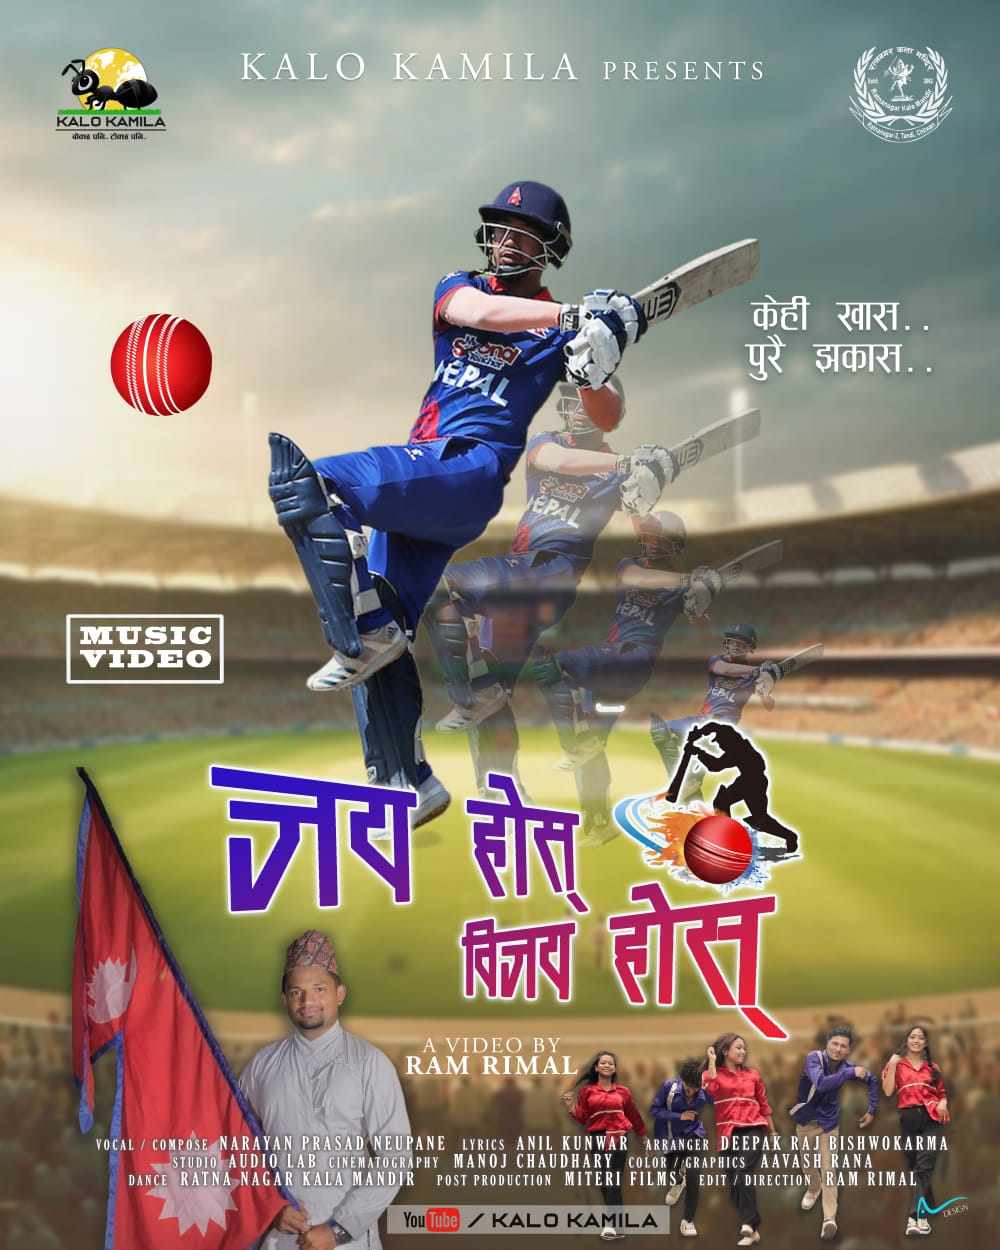 नेपाली क्रिकेट टिम प्रति समर्पित 'जय होस् विजय होस्' गीतको म्युजिक भिडियो सार्वजनिक